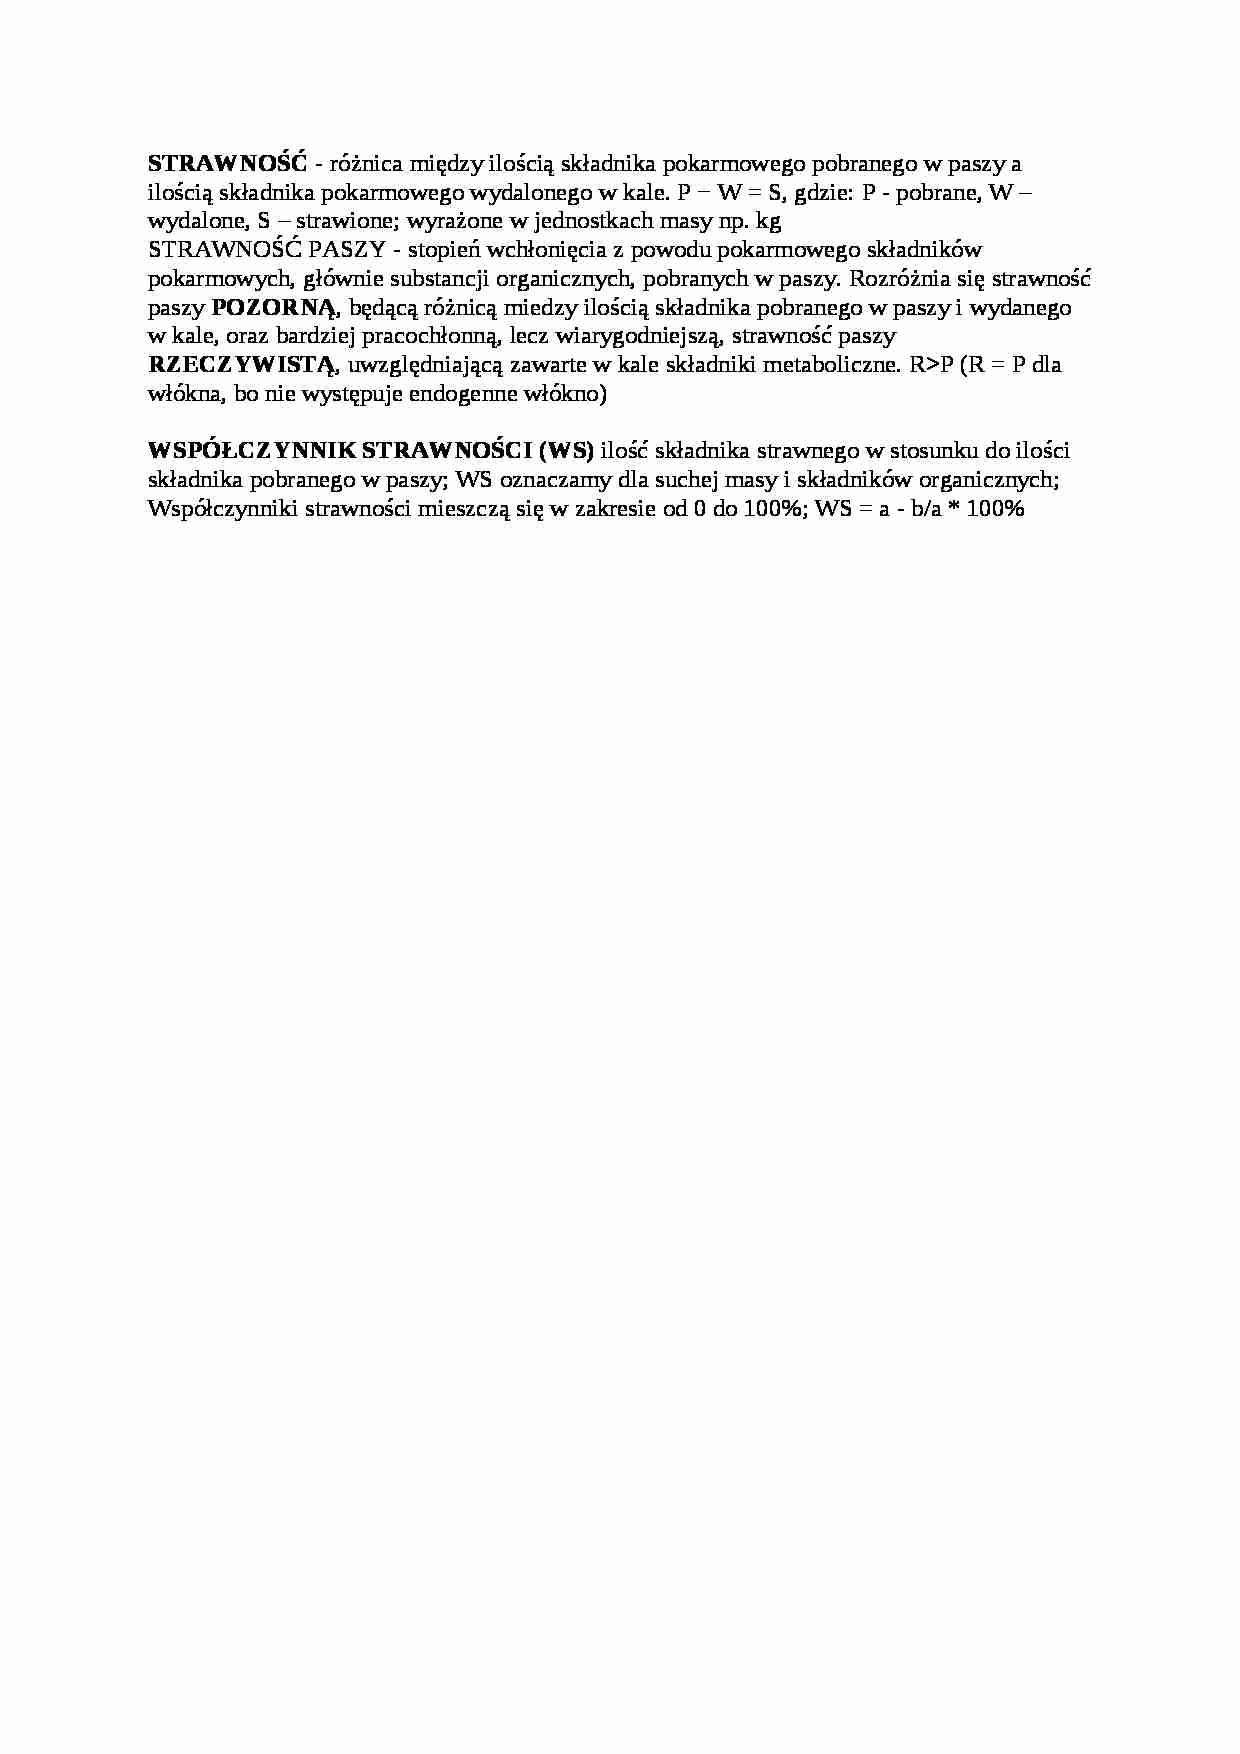 Trawienie poligastryczne- strawność - opracowanie, sem IV - strona 1